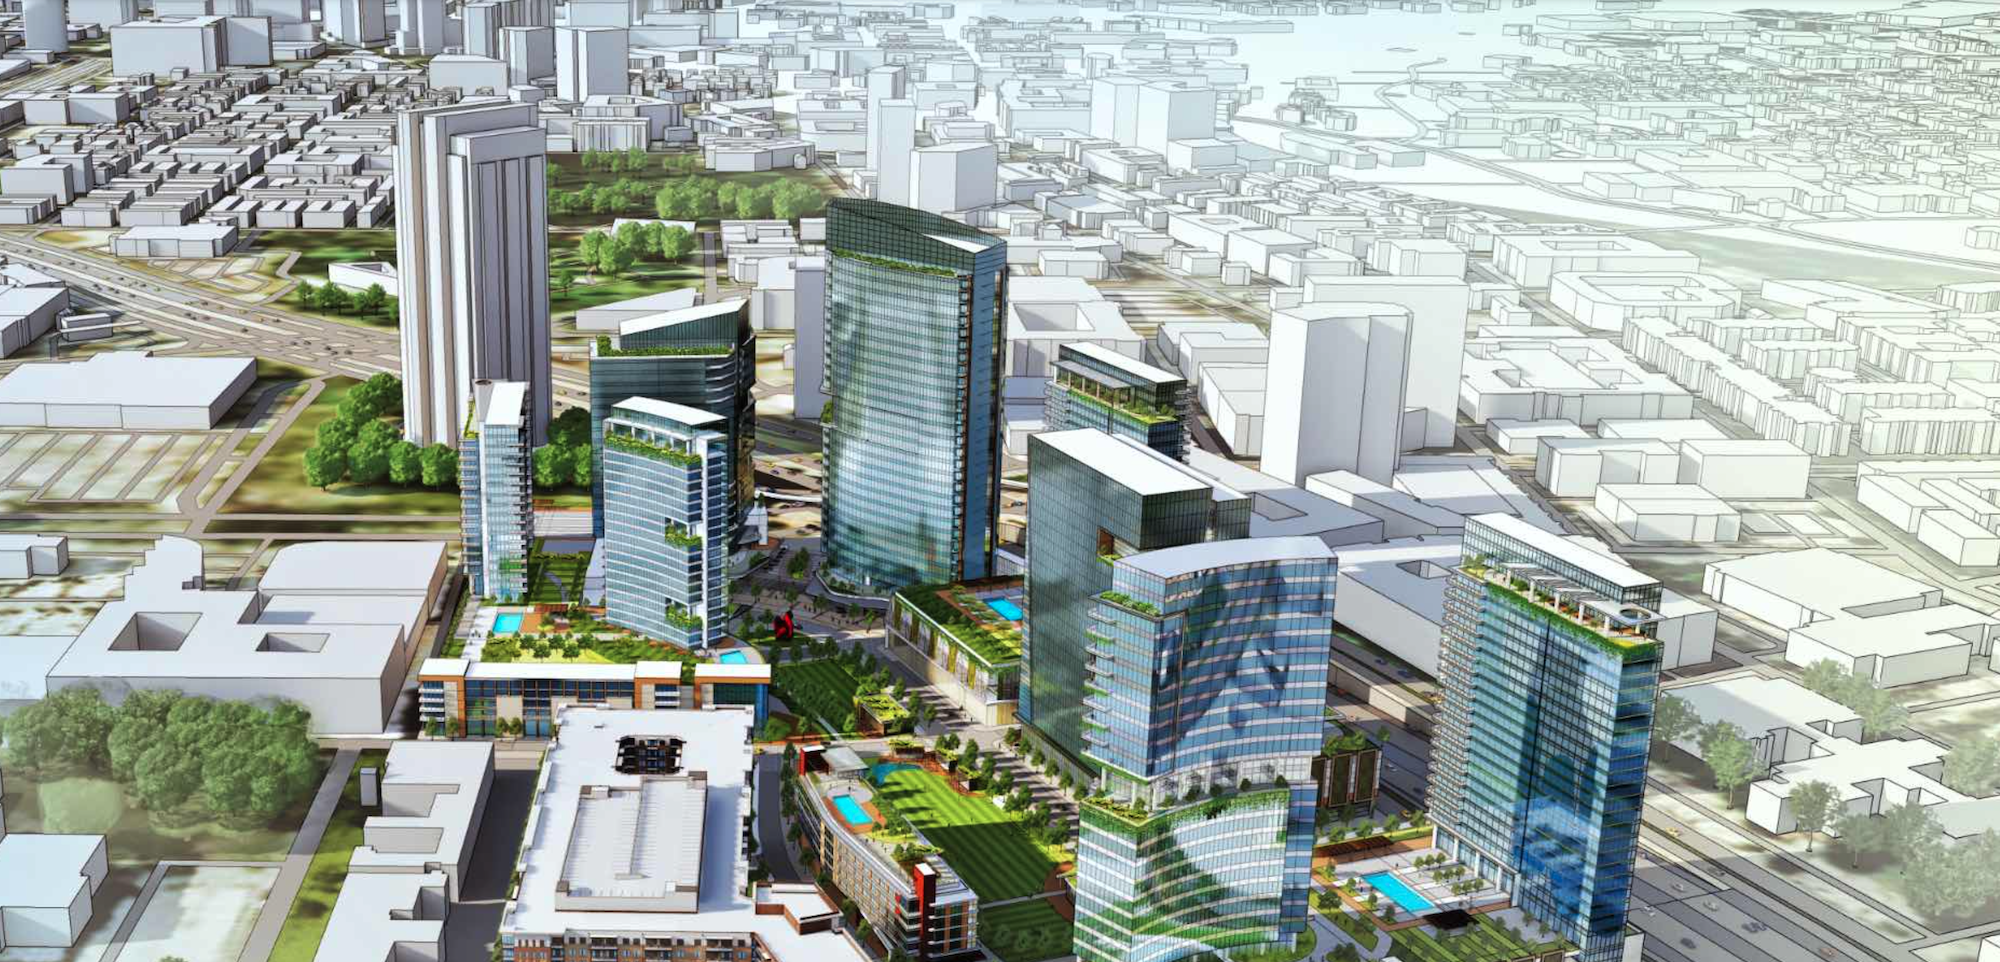 The Central mixed-use development, Dallas